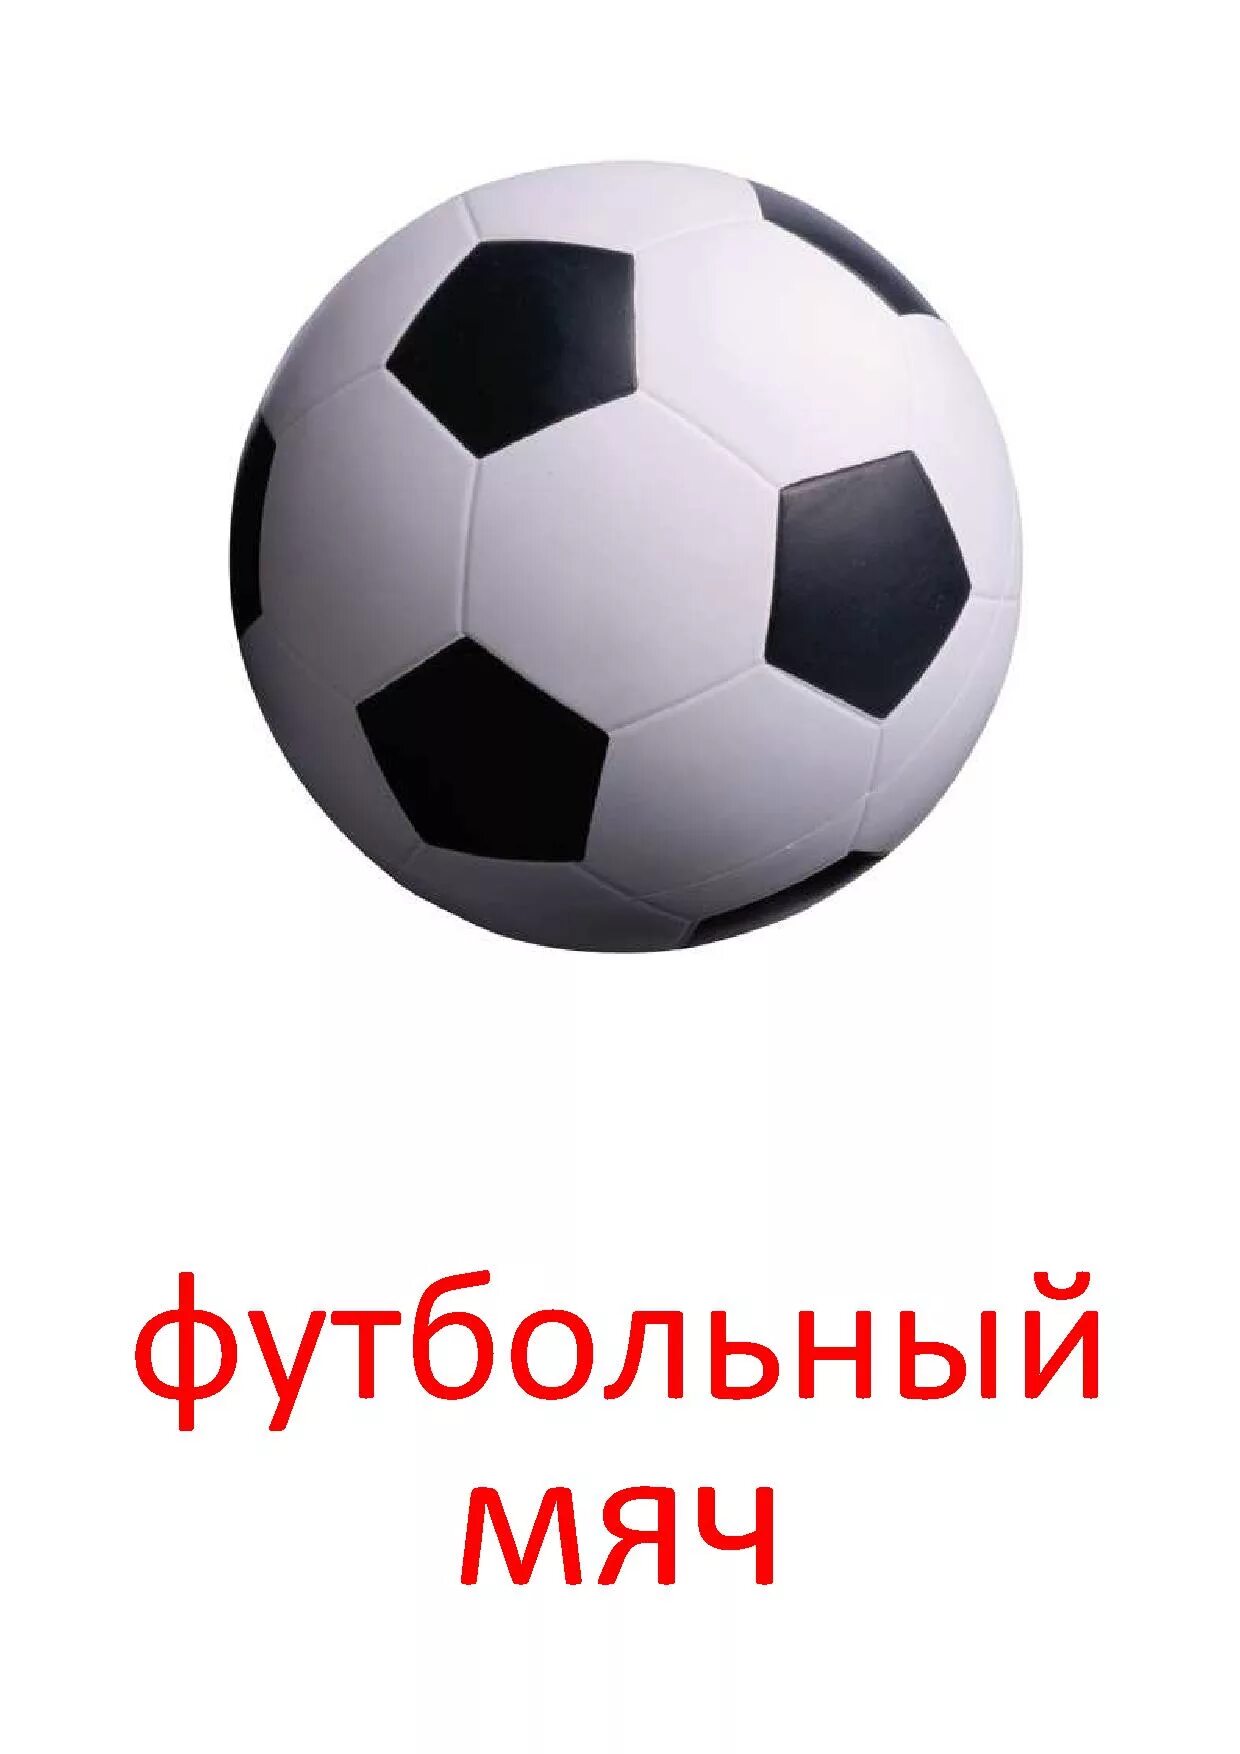 Игры футбольные мячи 3